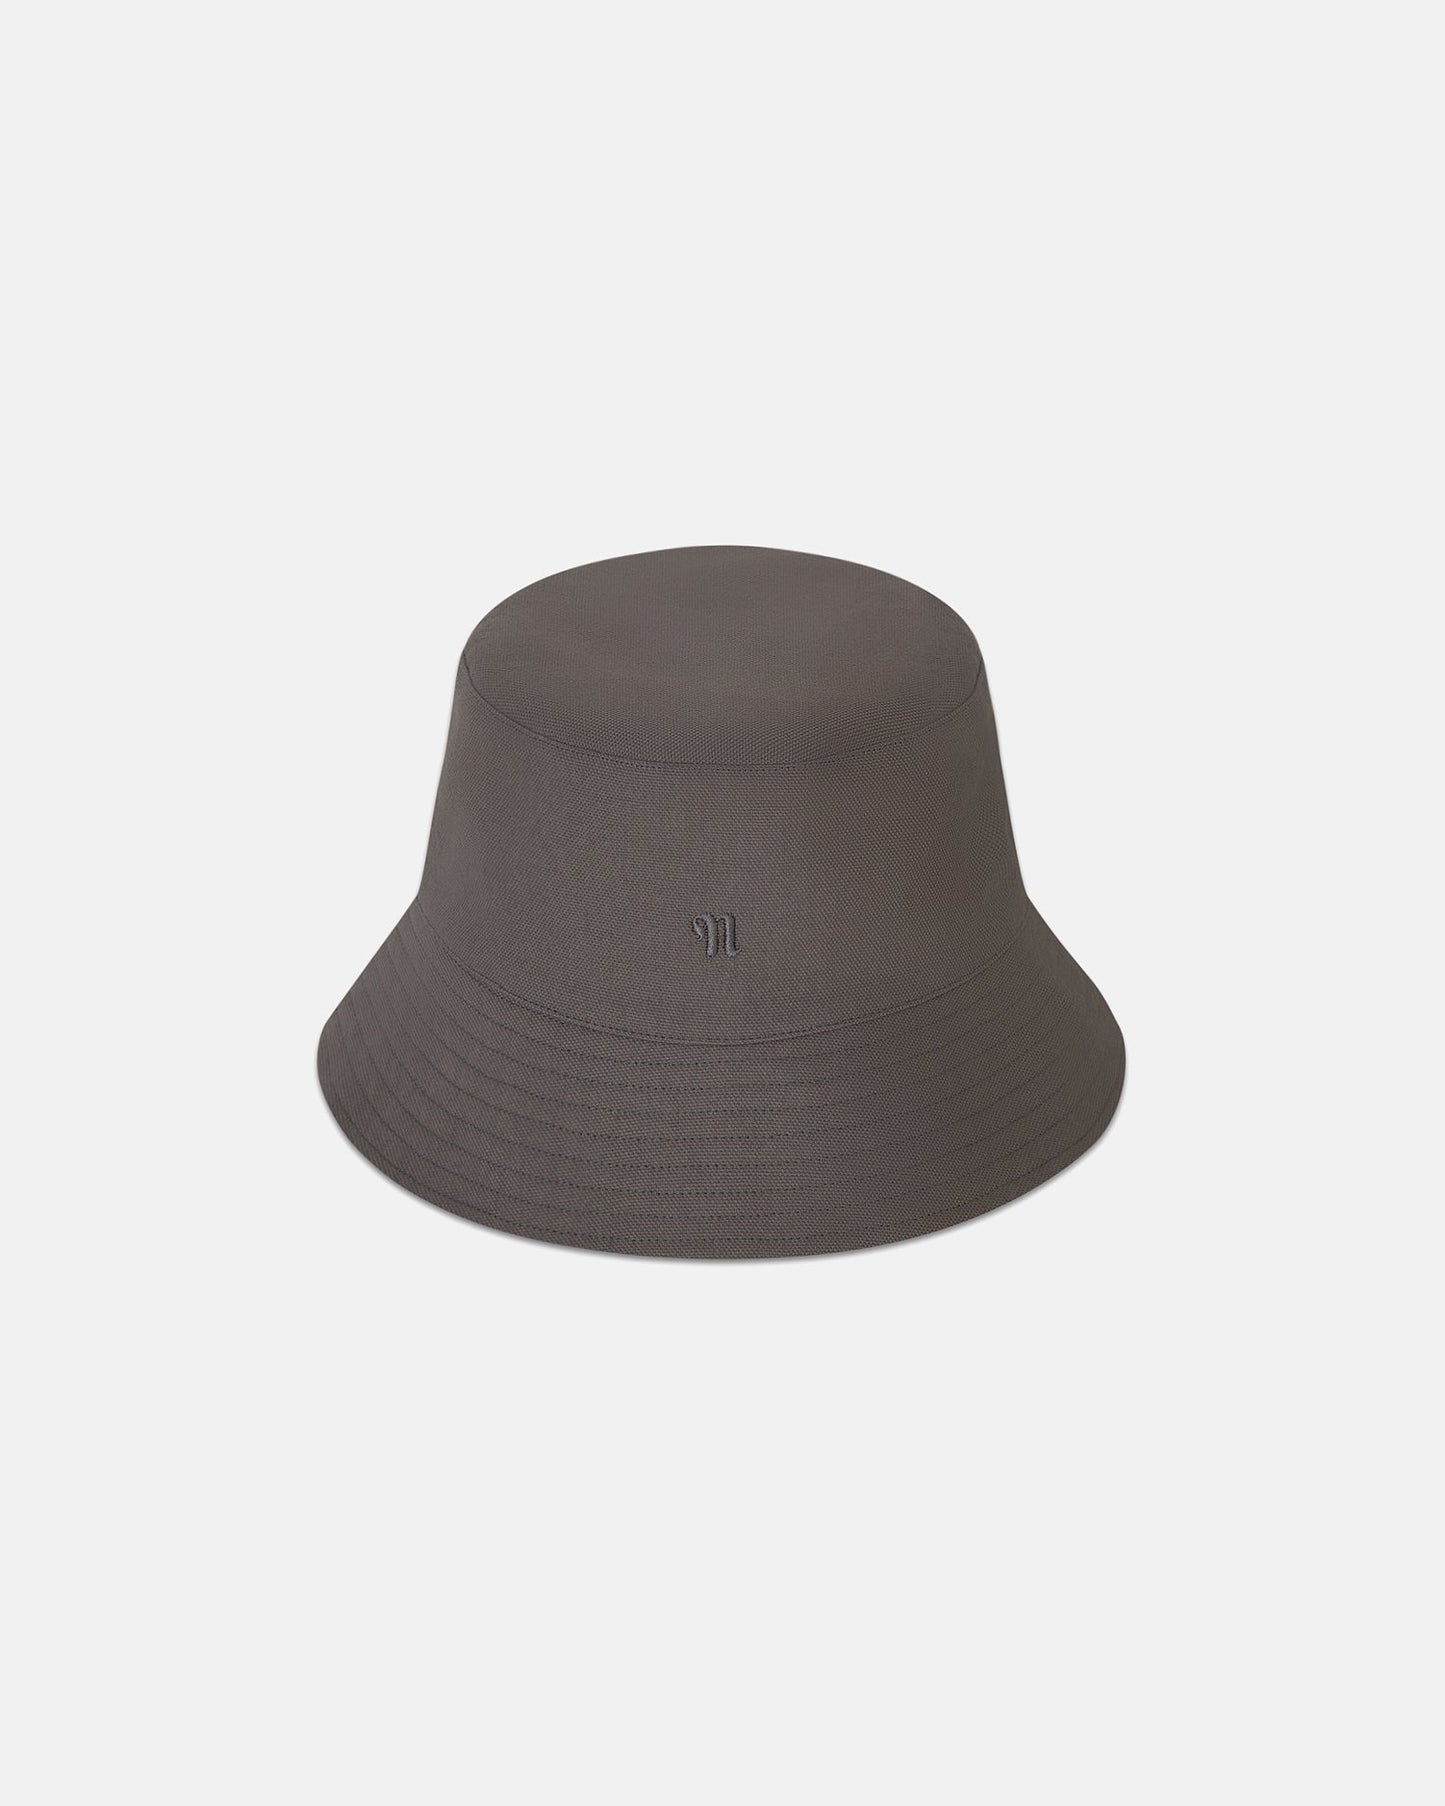 Caran - Cotton-Canvas Bucket Hat - Asphalt